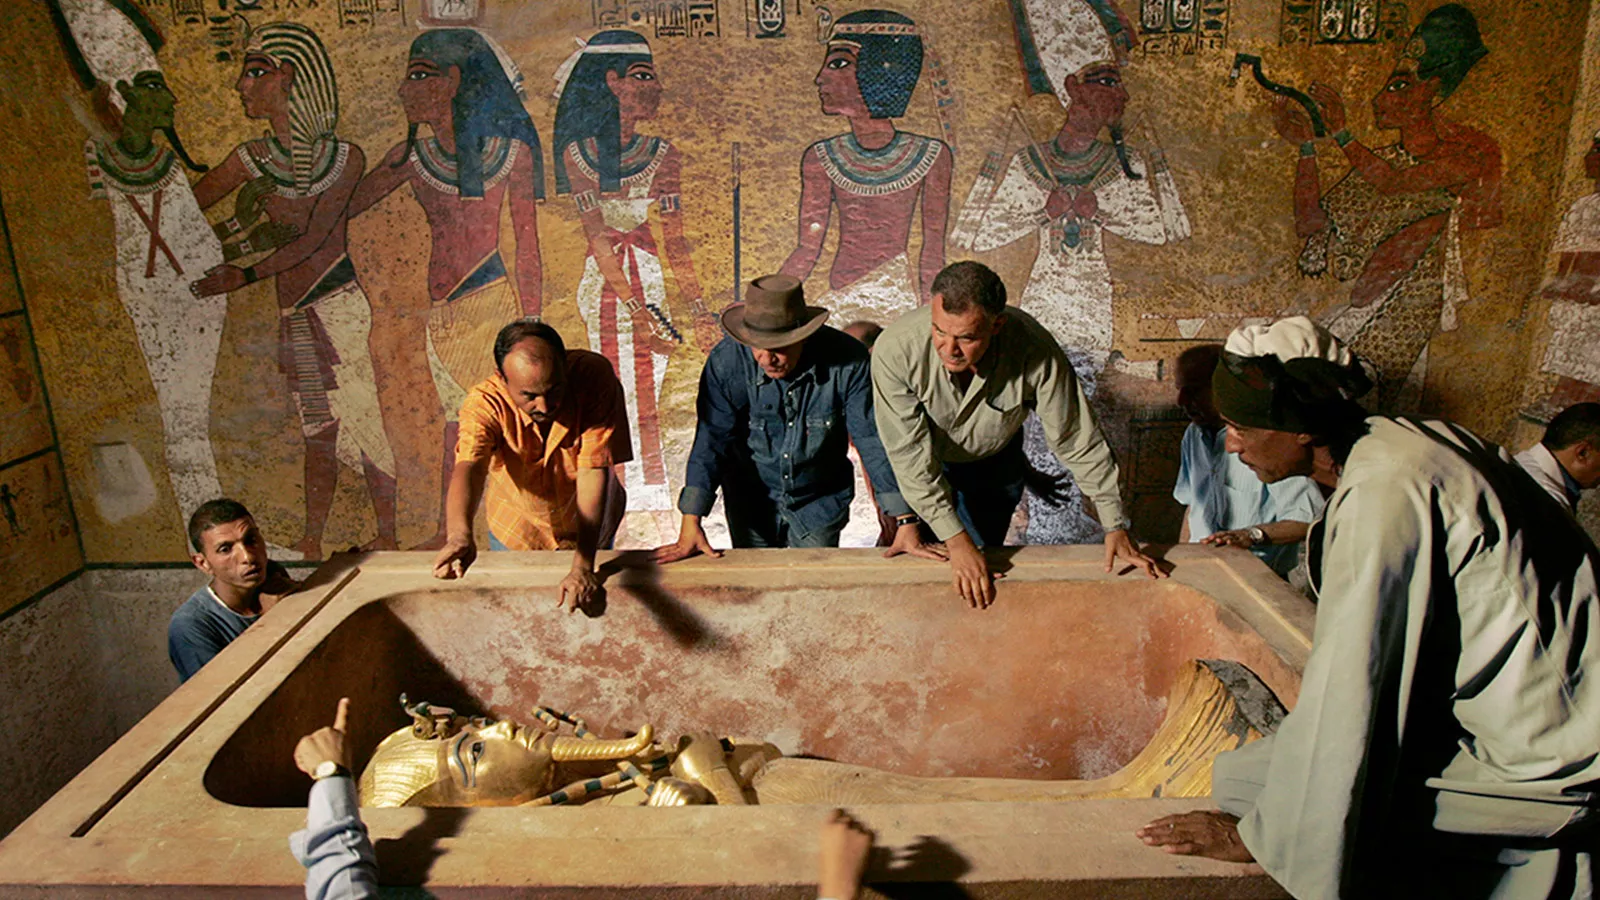 <p>Захи Хавасс (на заднем плане, третий слева), глава Верховного совета древностей Египта, наблюдает за извлечением мумии царя Тутанхамона из его каменного саркофага в подземной гробнице в Долине Царей в Луксоре 4 ноября 2007 года. Это был первый раз, когда широкая общественность смогла увидеть &laquo;лицо&raquo; древнеегипетского правителя</p>